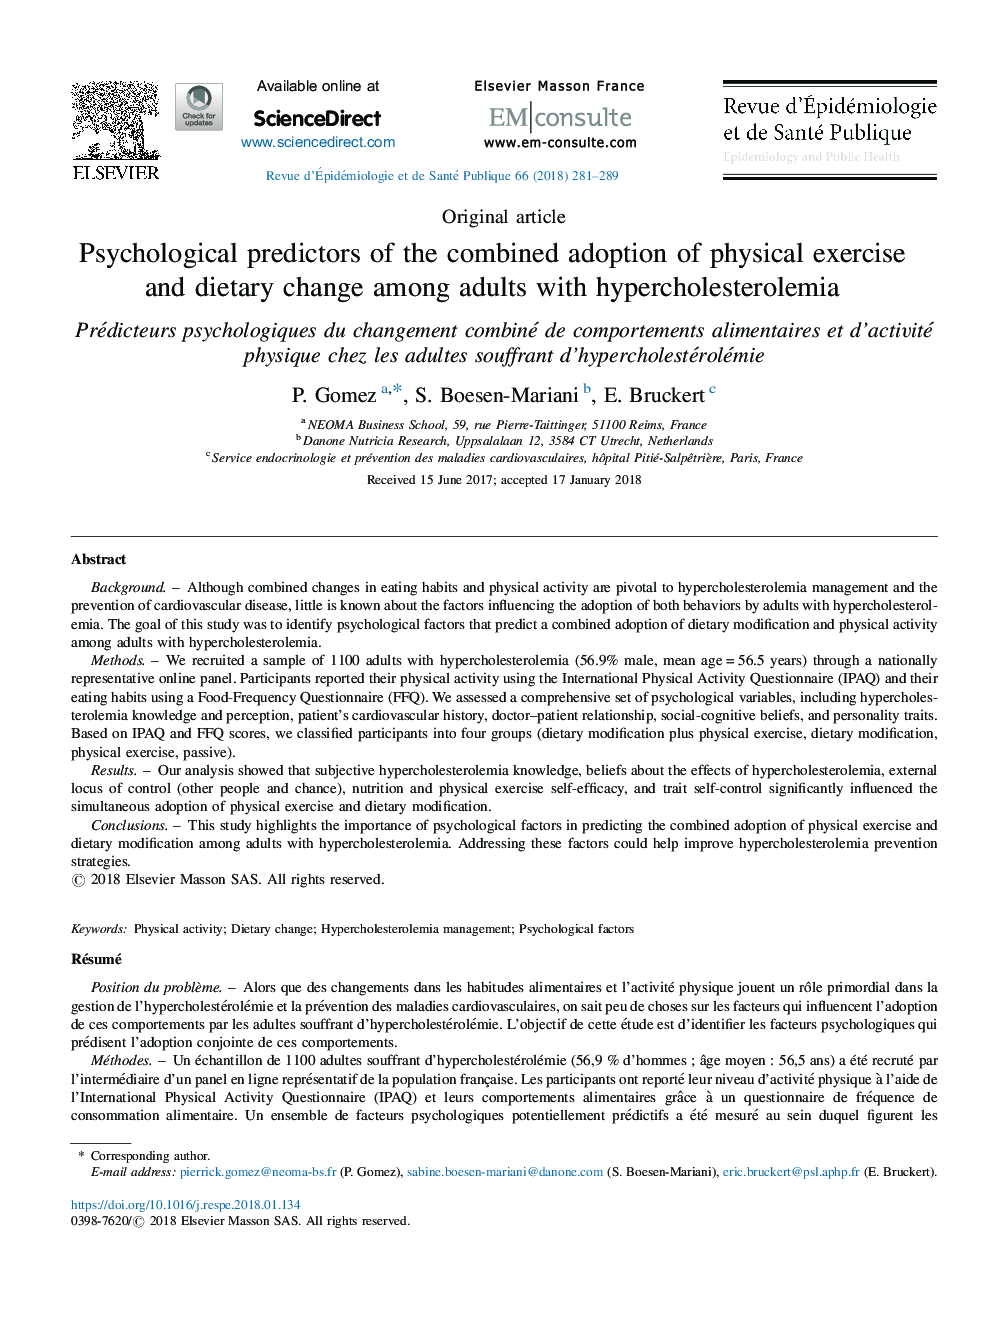 پیش بینی های روان شناختی از پذیرش ترکیب جسمانی و تغییر رژیم غذایی در بزرگسالان مبتلا به هیپوکلسترولمی 